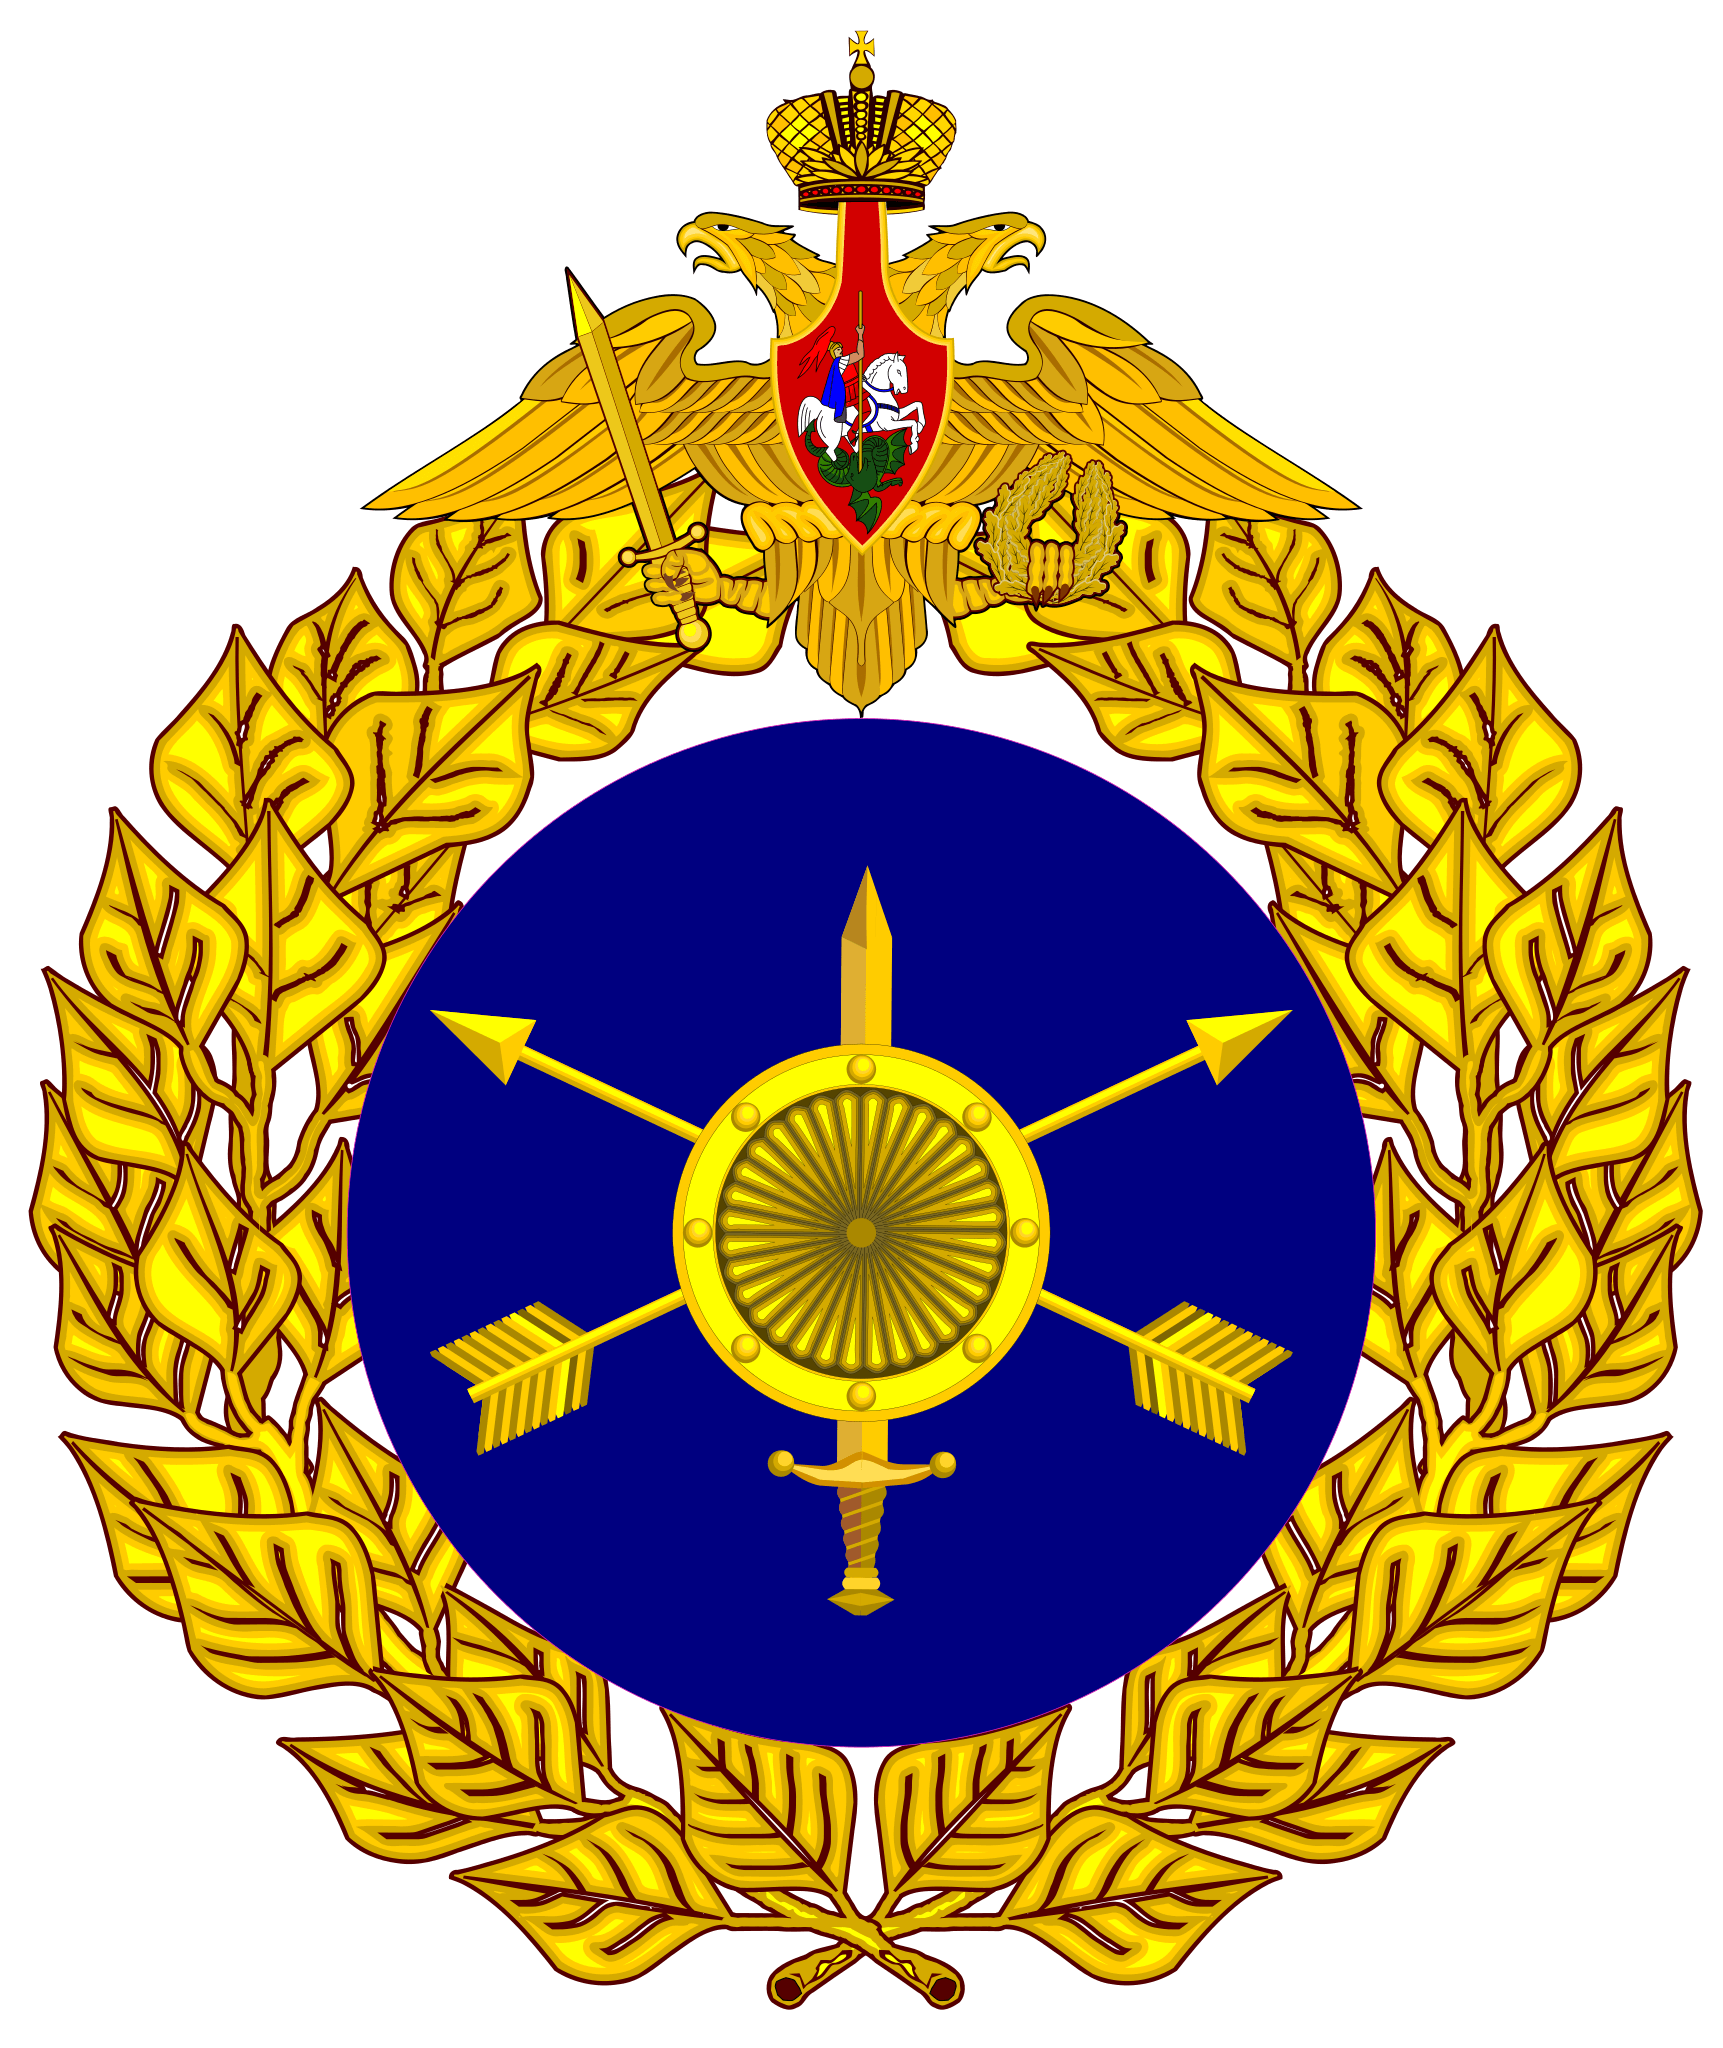 Strategic Rocket Forces's logo